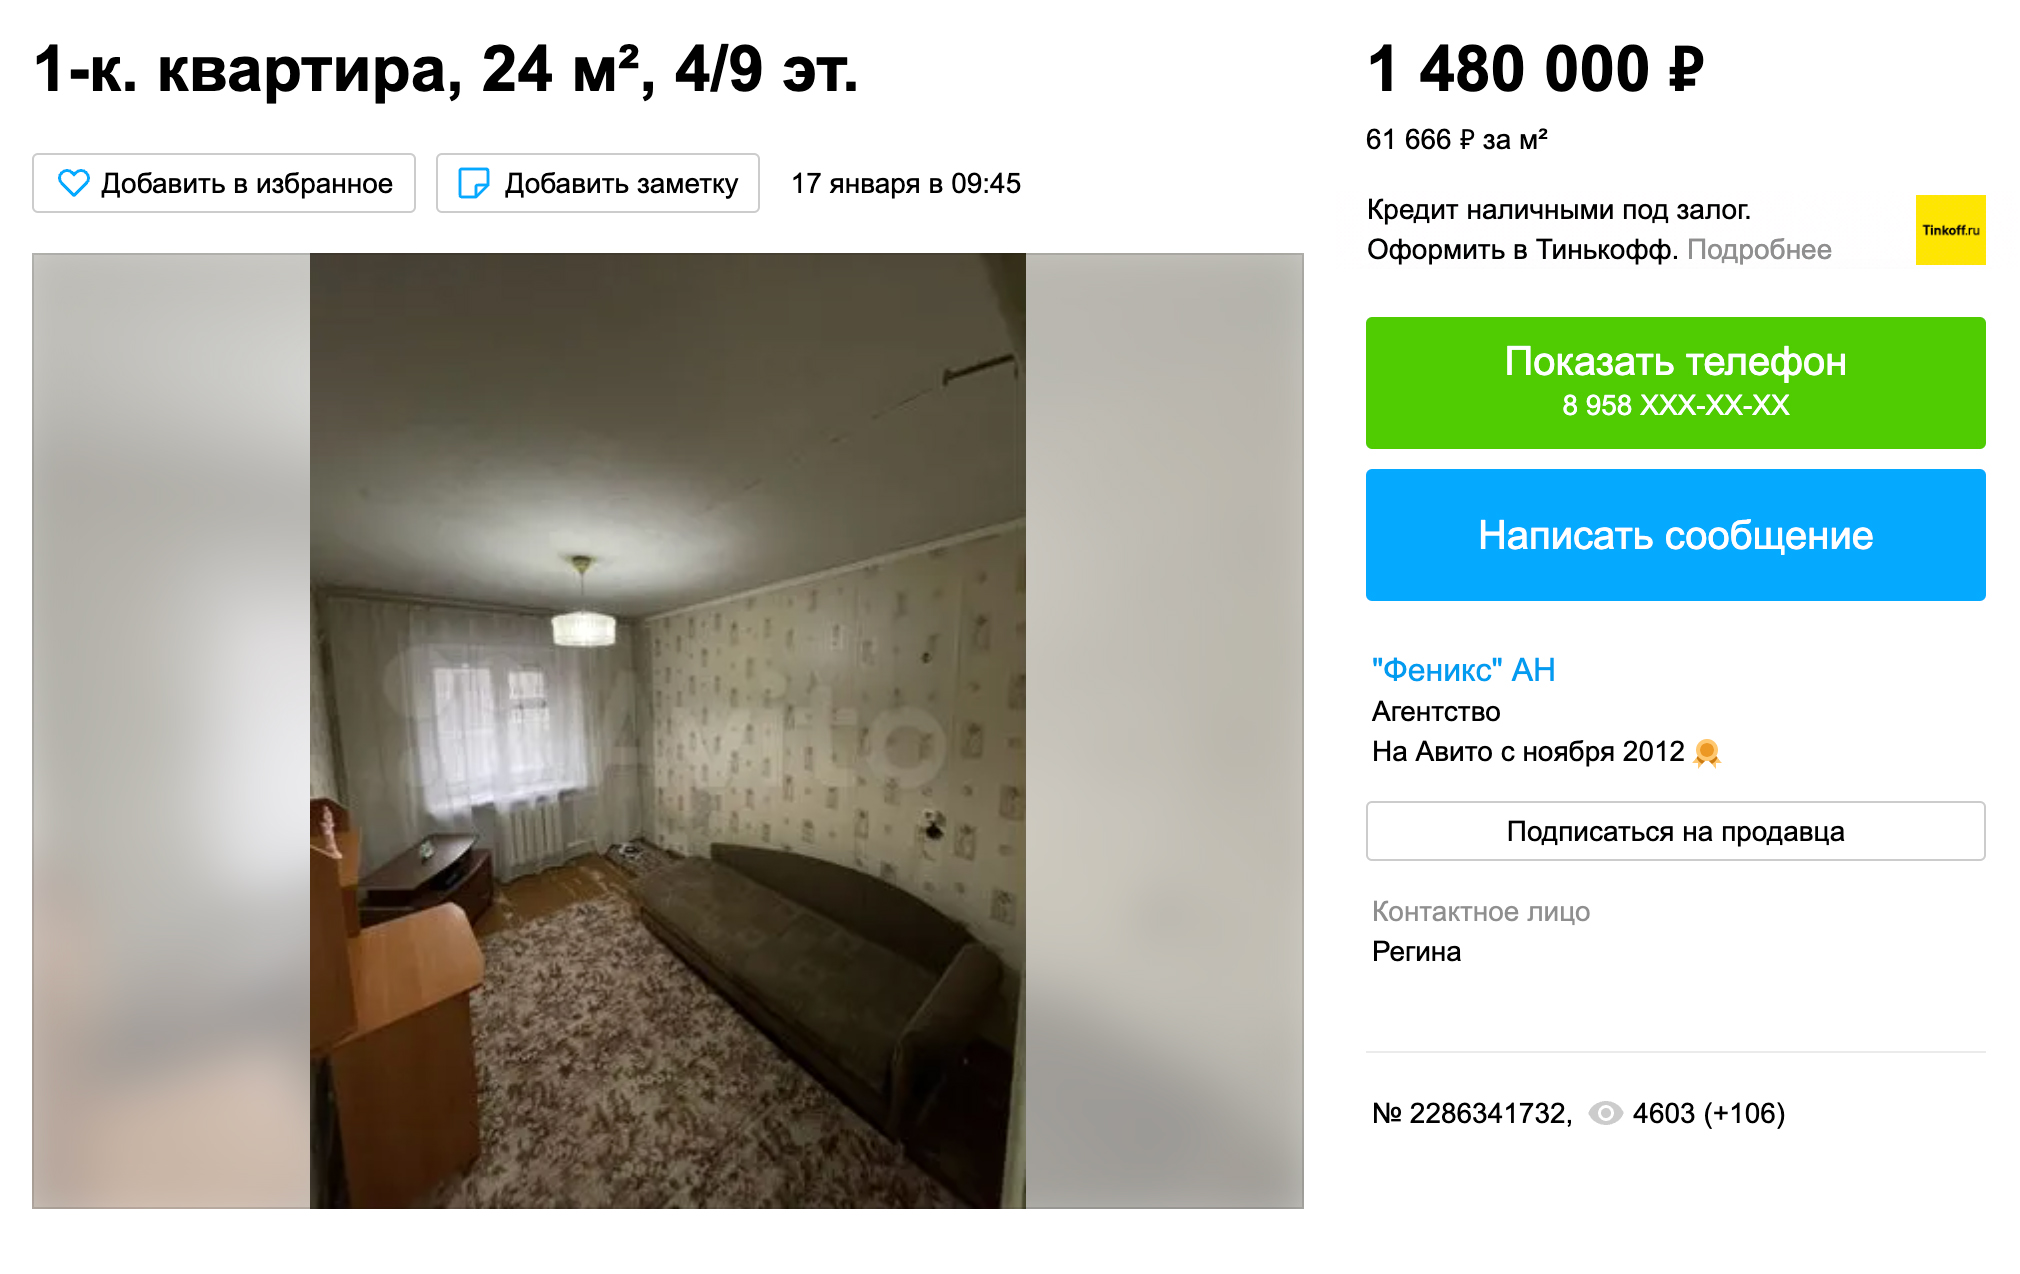 Однокомнатная квартира на вторичном рынке стоит от 1,5 млн рублей